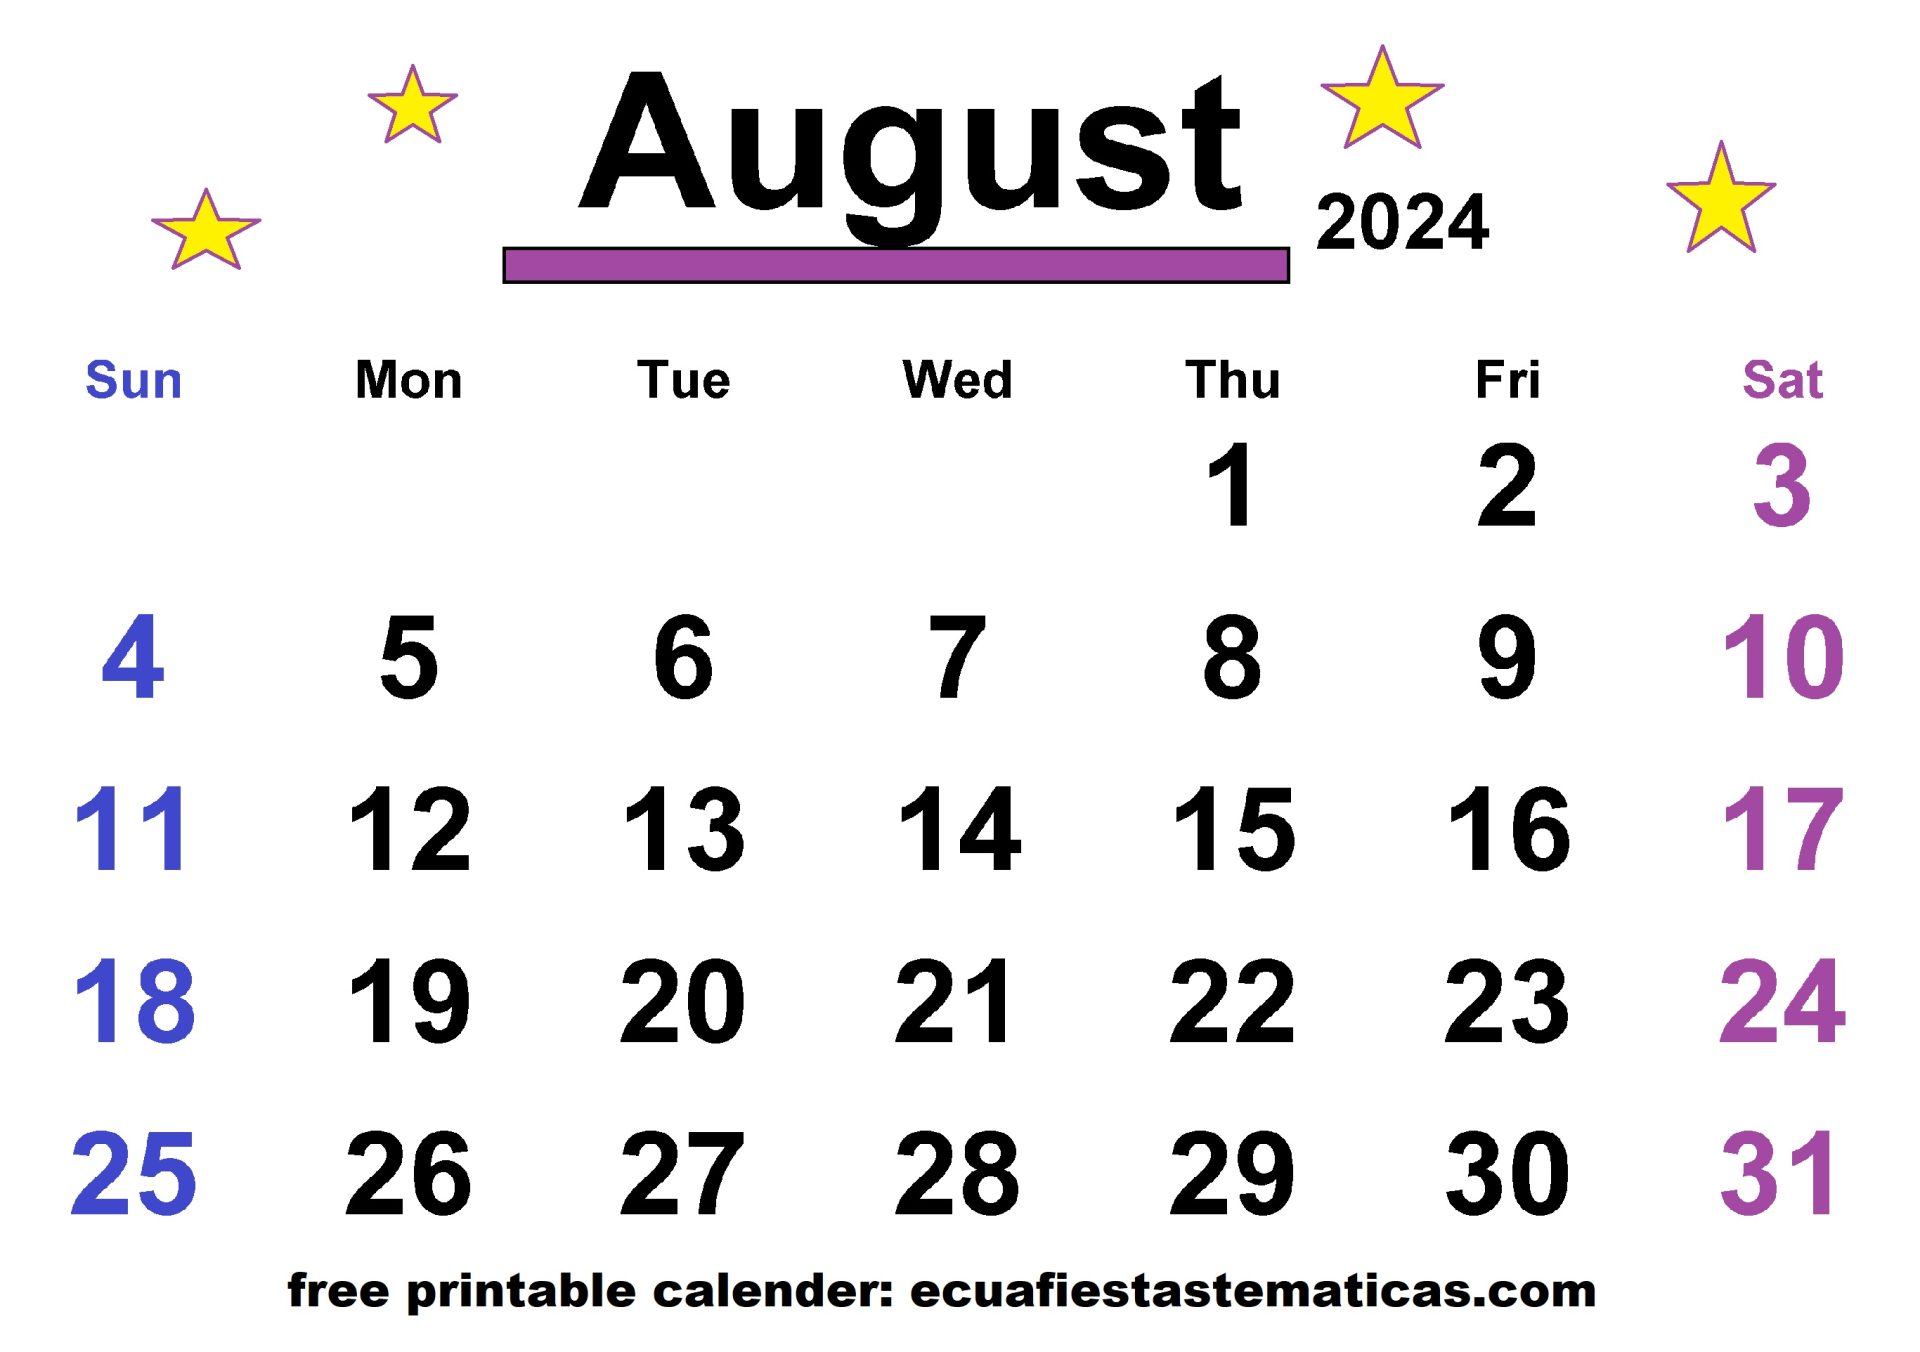 August 2024 Calendar with star